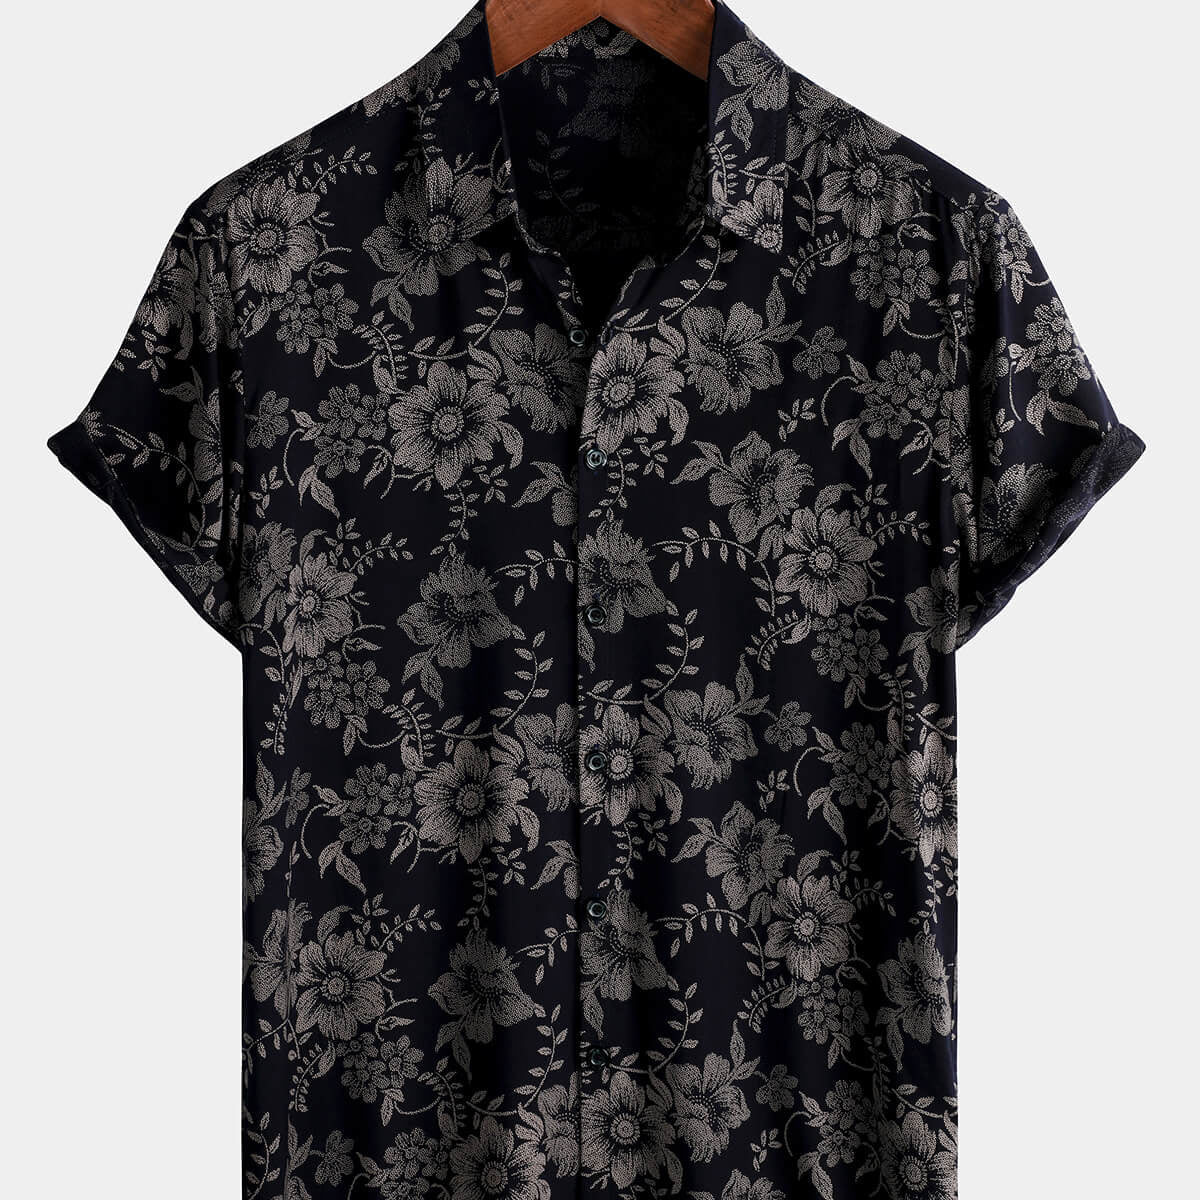 Camisa hawaiana de manga corta azul marino con botones transpirable para vacaciones con flores vintage y estampado floral para hombre